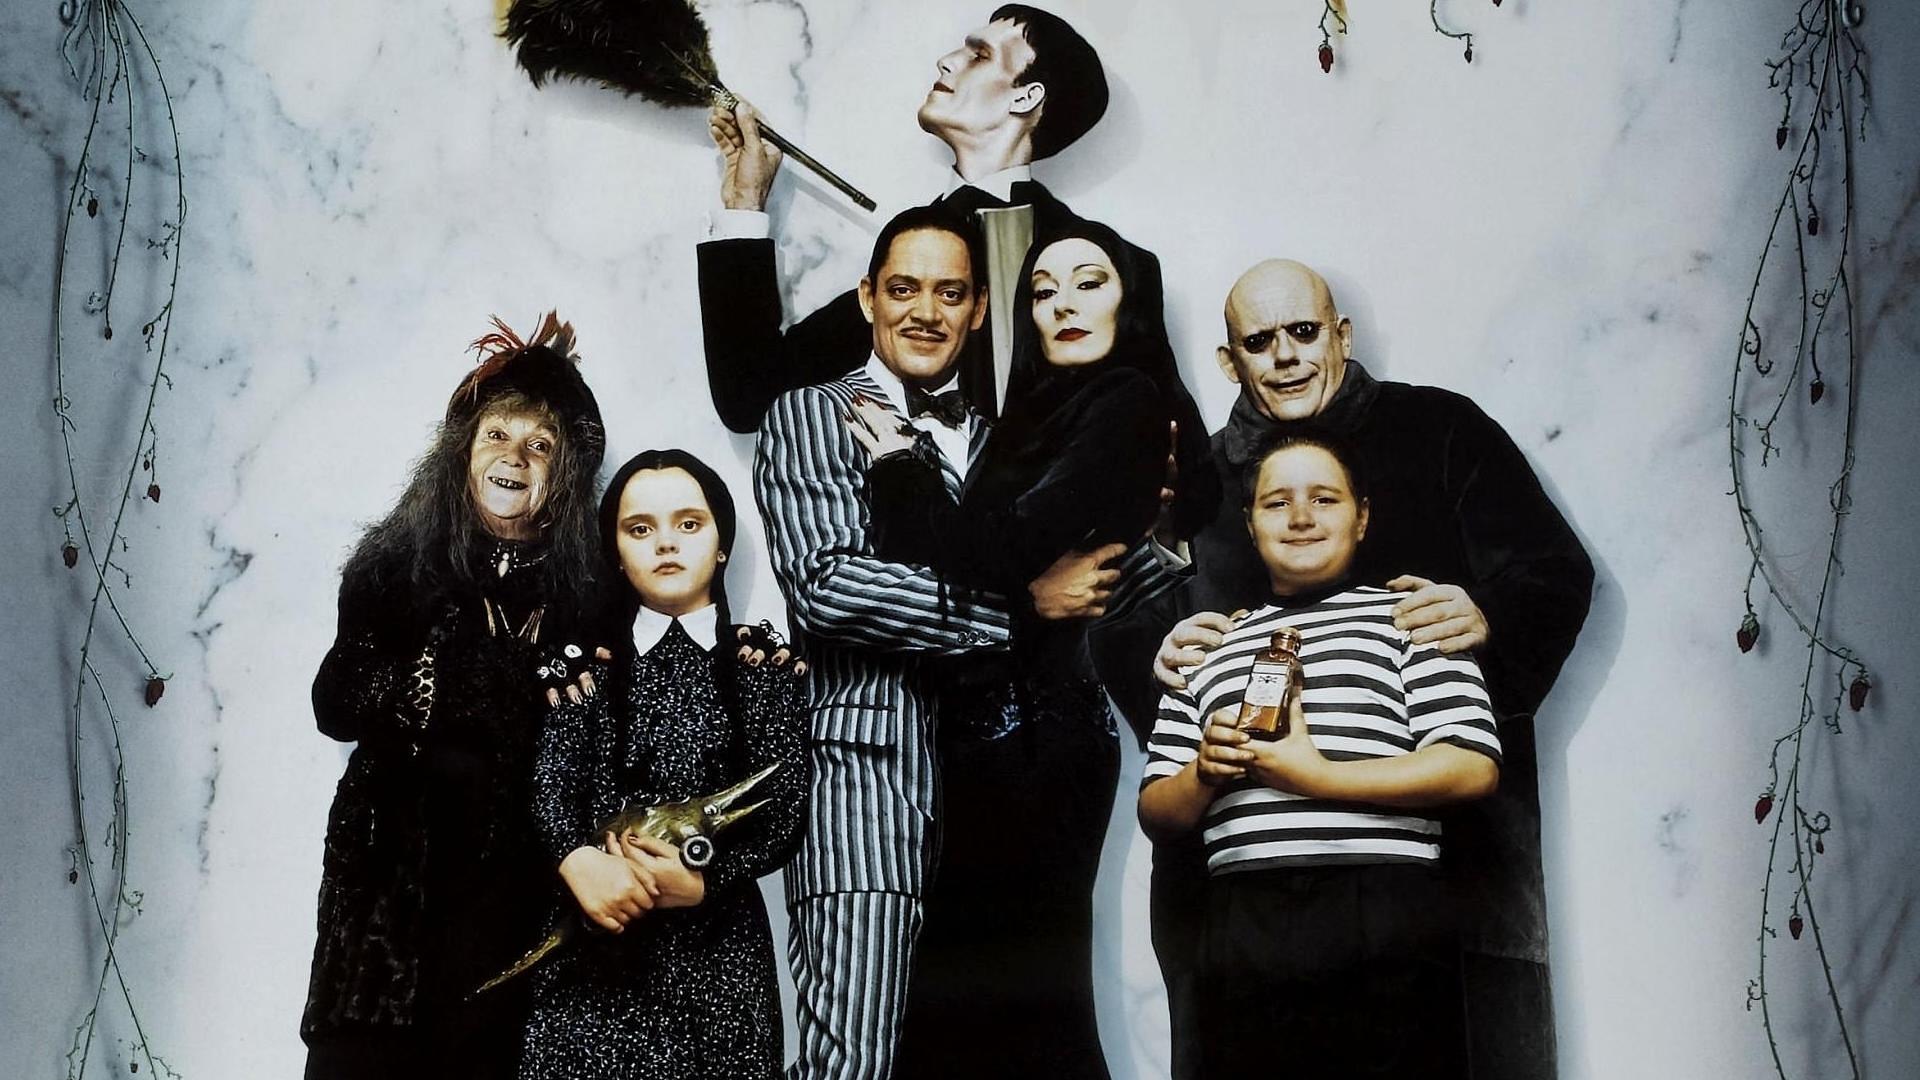 Tim Burton travaille à une nouvelle série autour de la Famille Addams